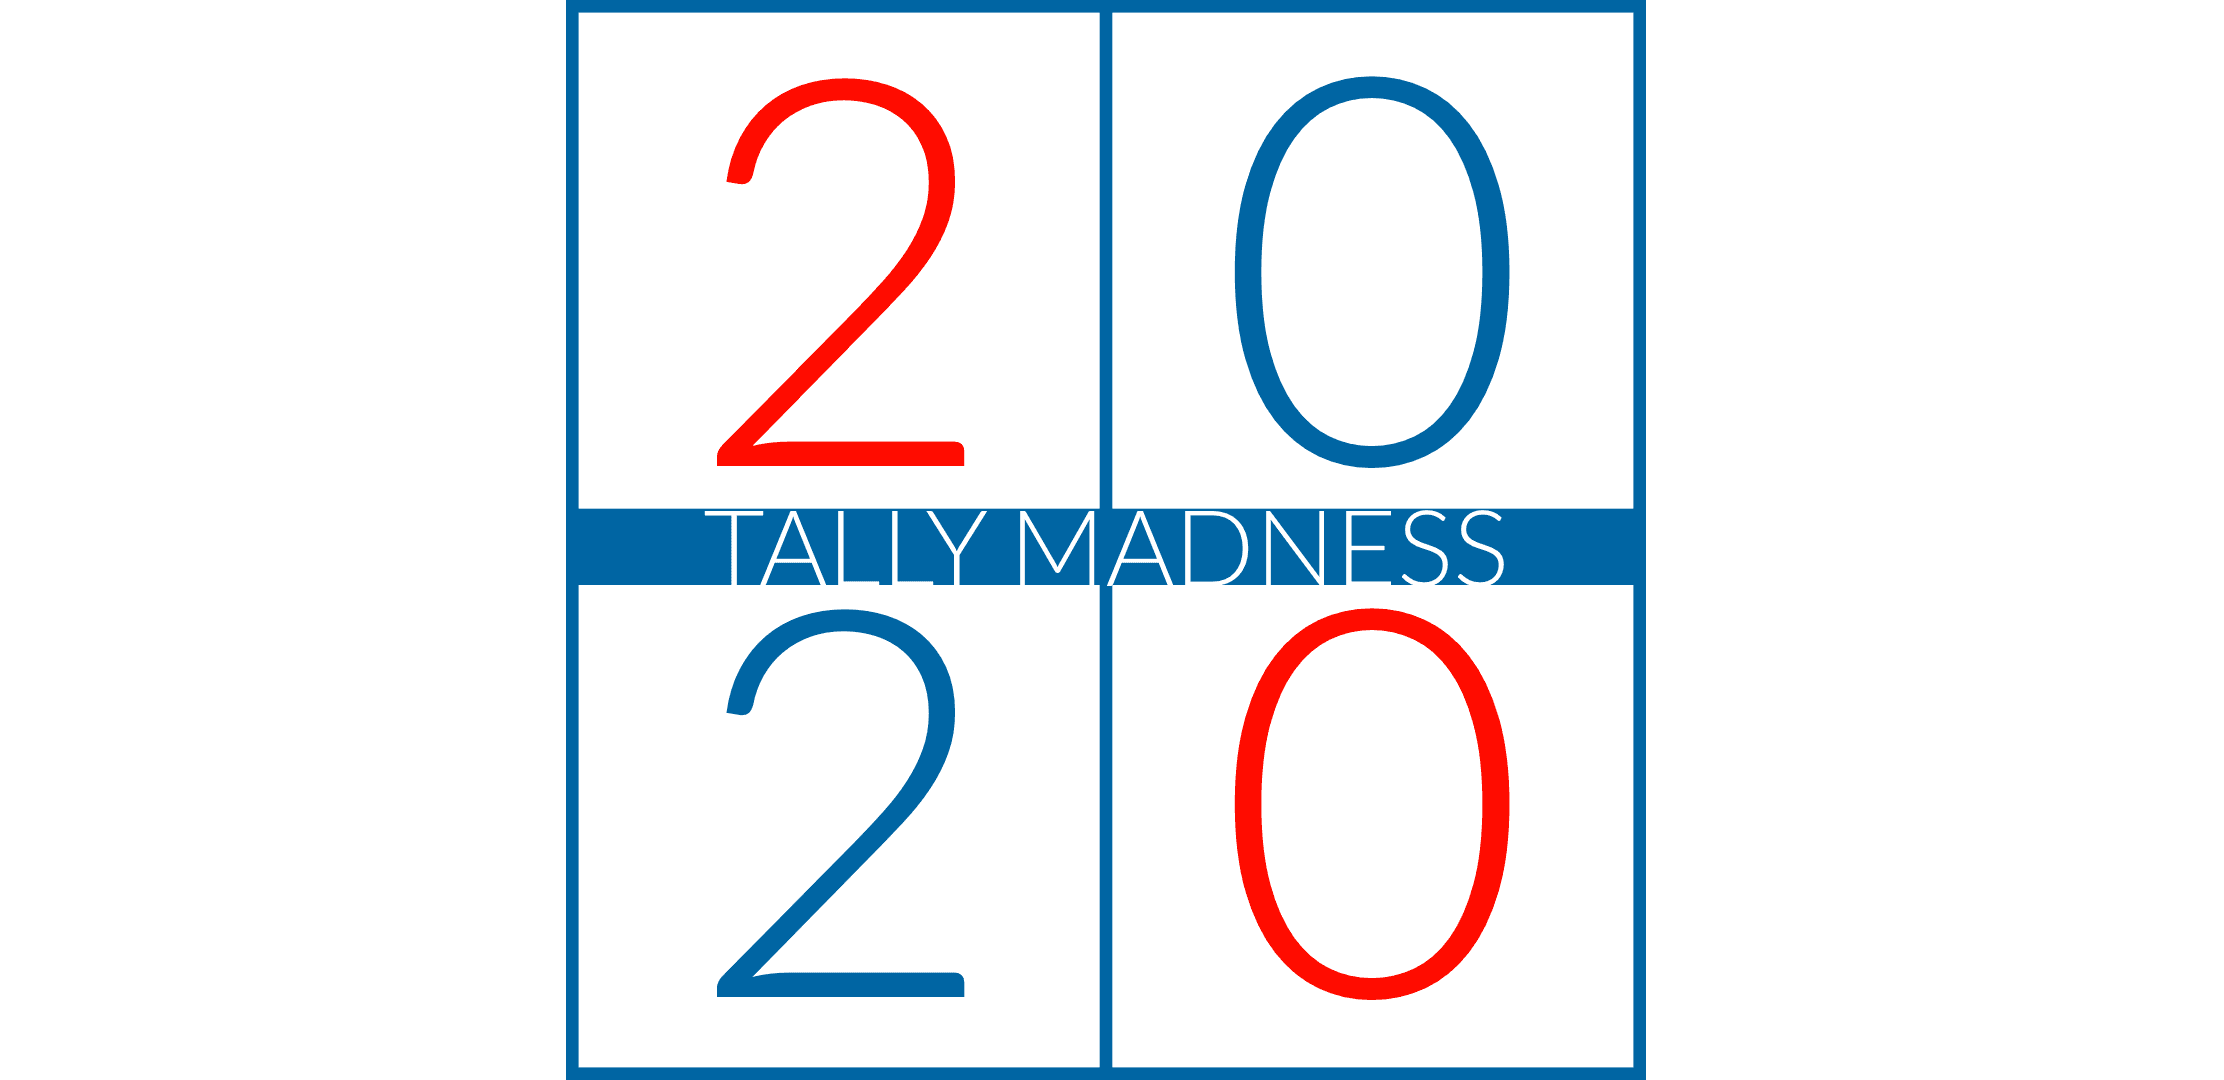  Tallymadness 2020